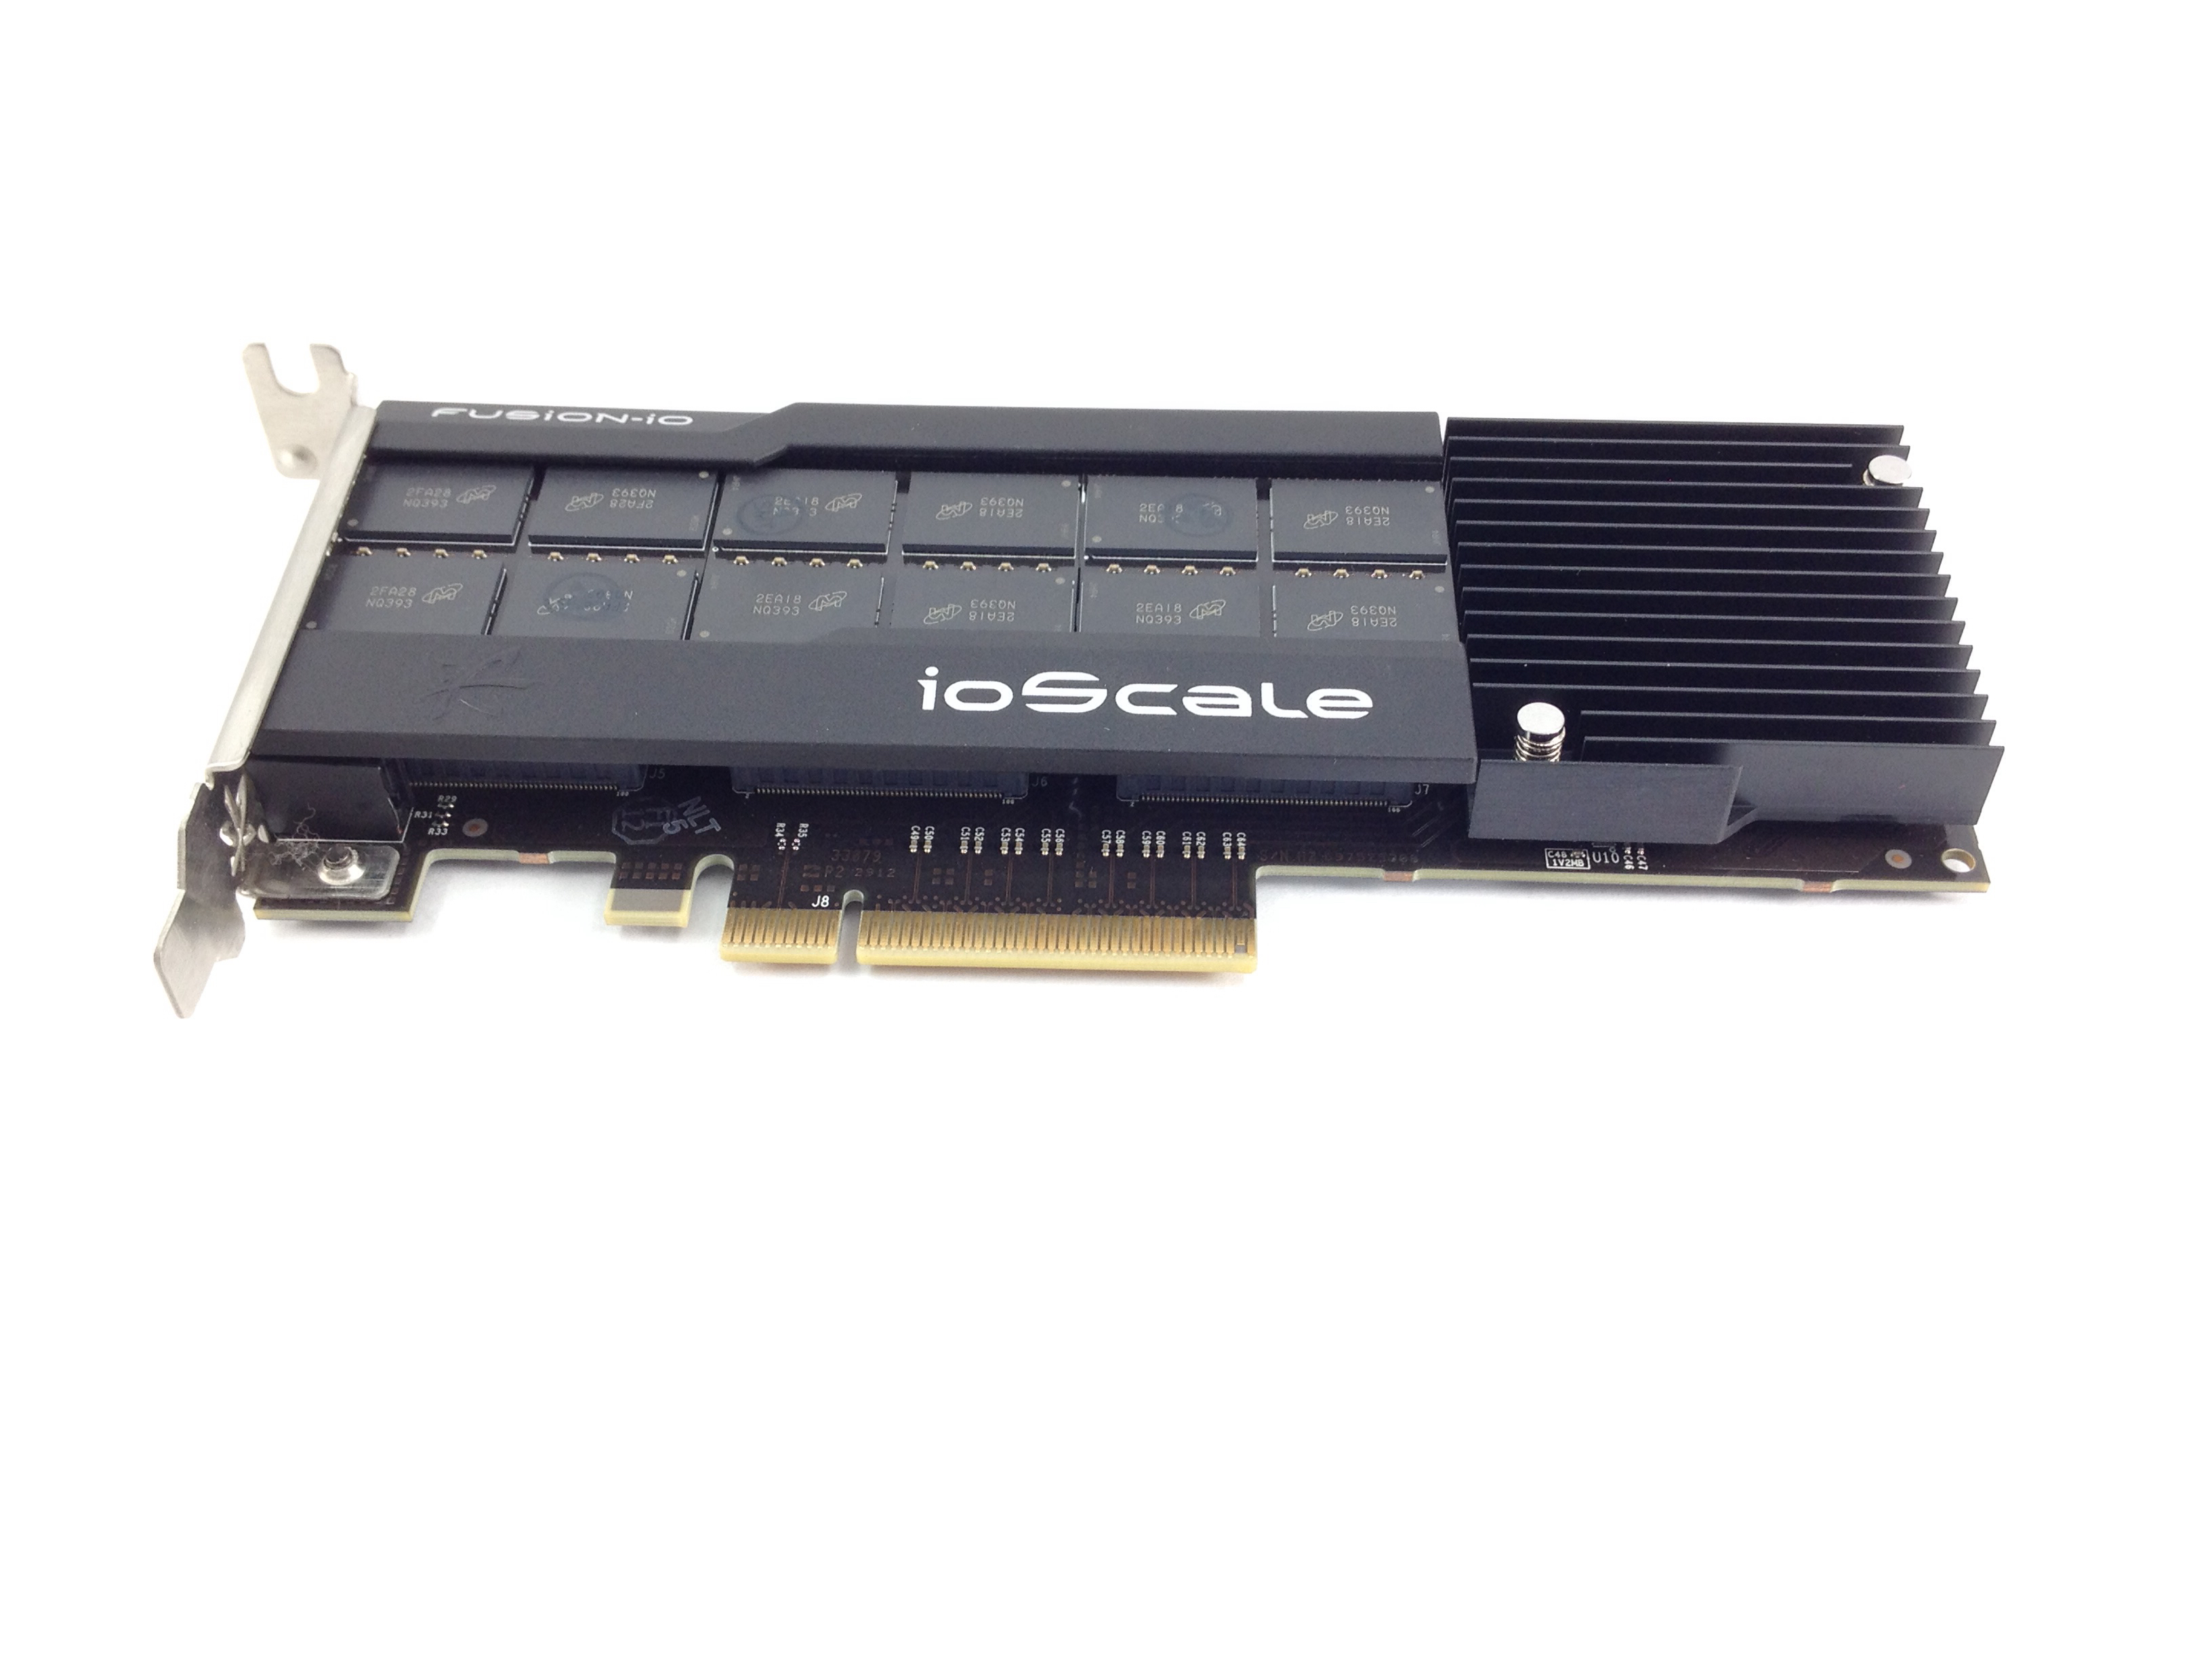 Fusion-Io 1.3TB Ioscale MLC PCI-E Solid State Drive SSD (F11-001-1T30-CS-0001)